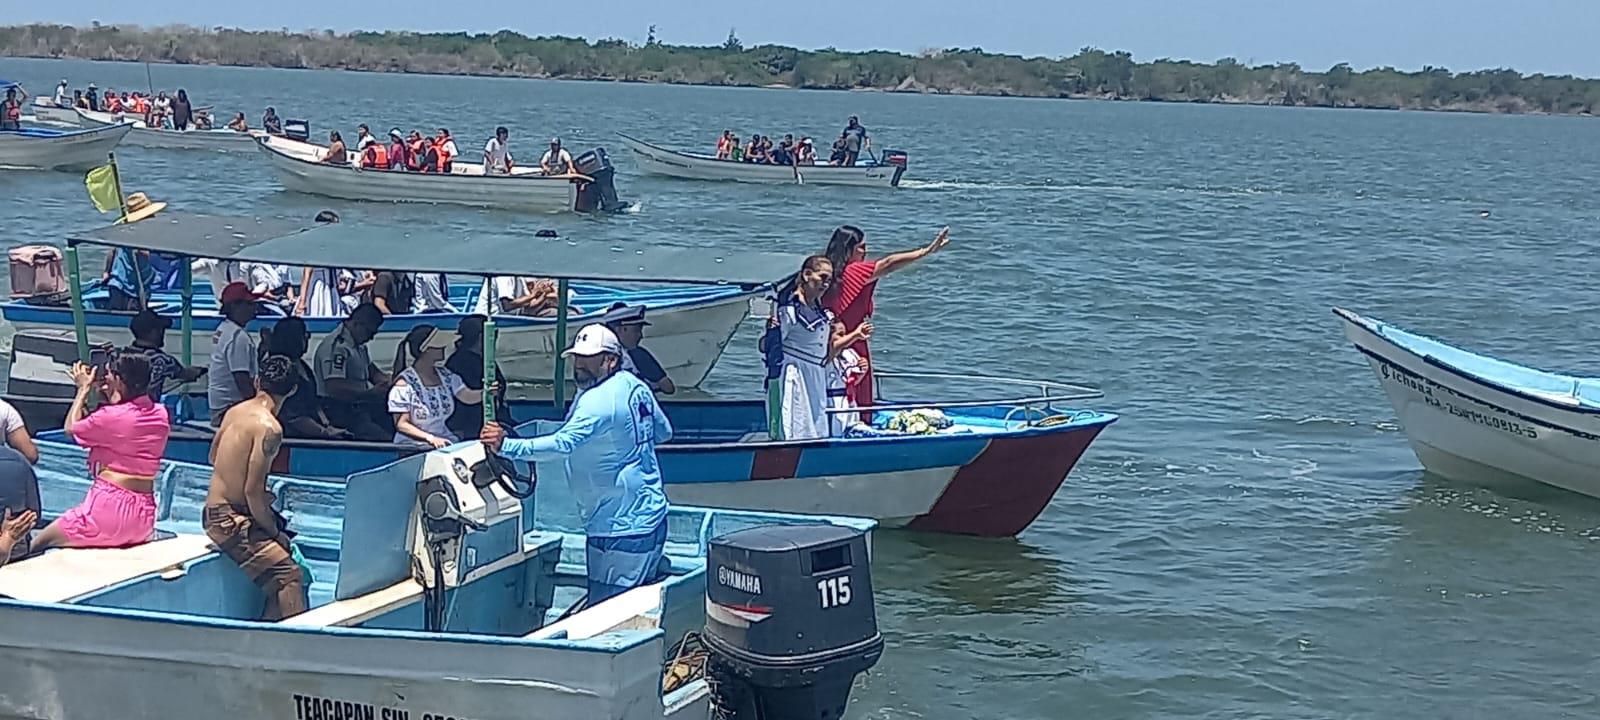 $!Lanzan al mar ofrenda floral en memoria de marinos y pescadores en Teacapán